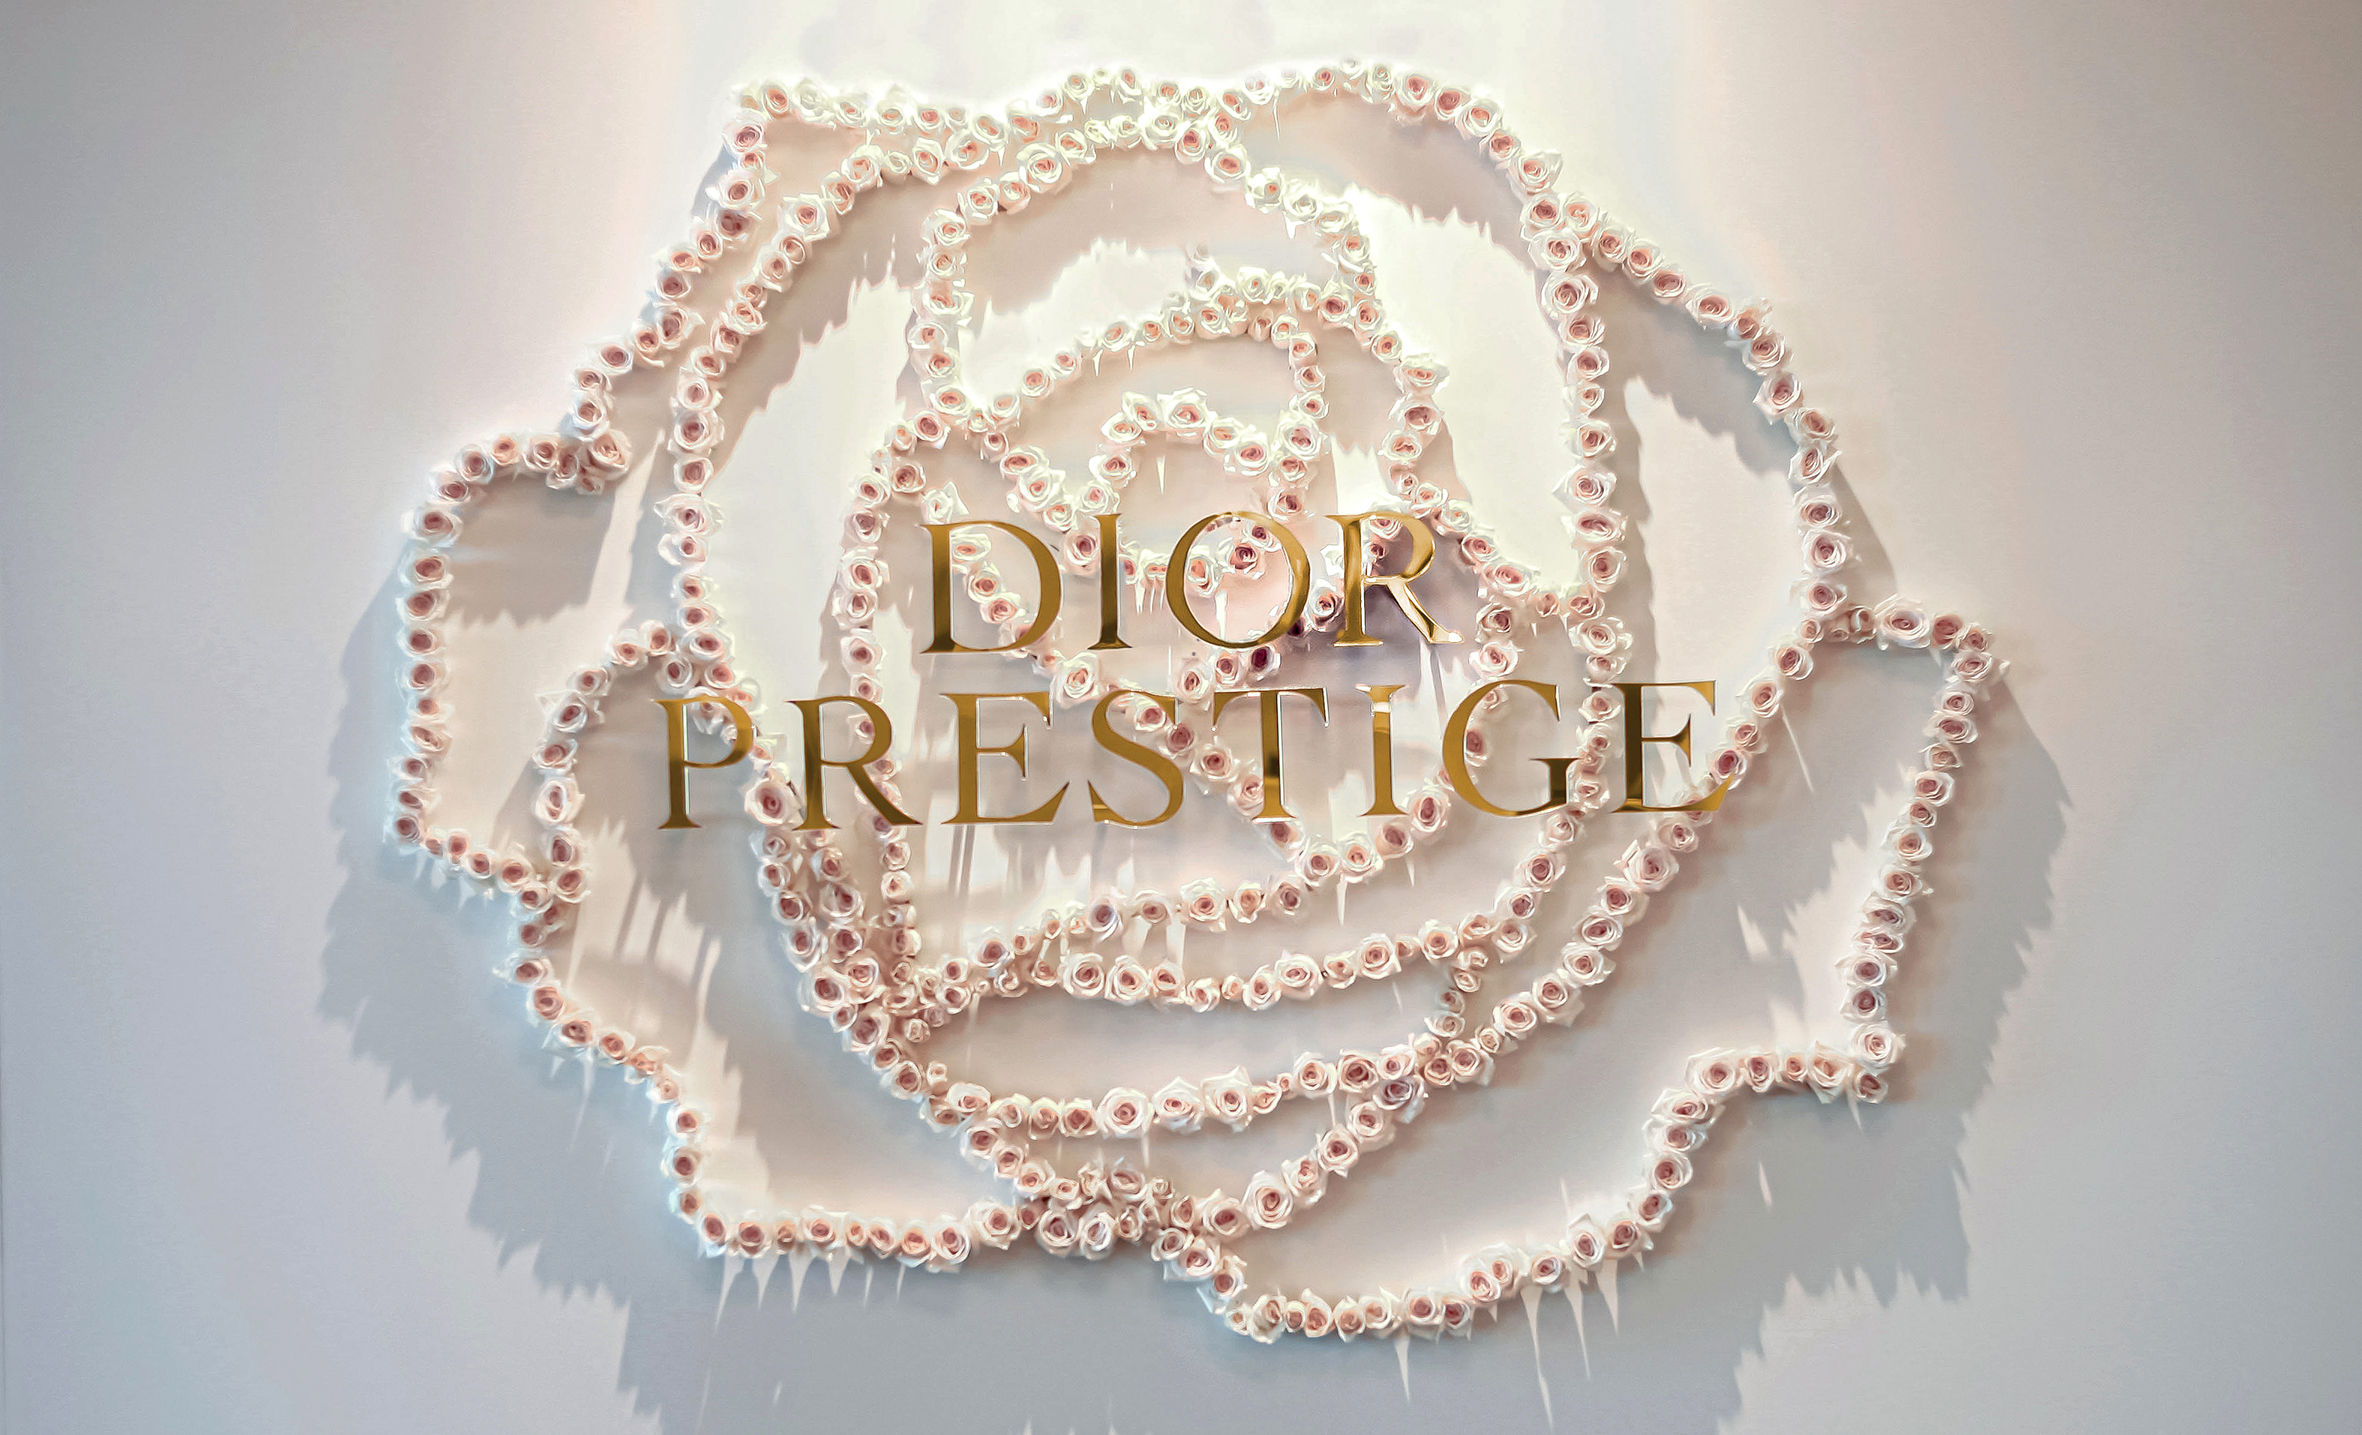 Prestige Hong Kong with Dior Presents Prestige Magic Rose Event